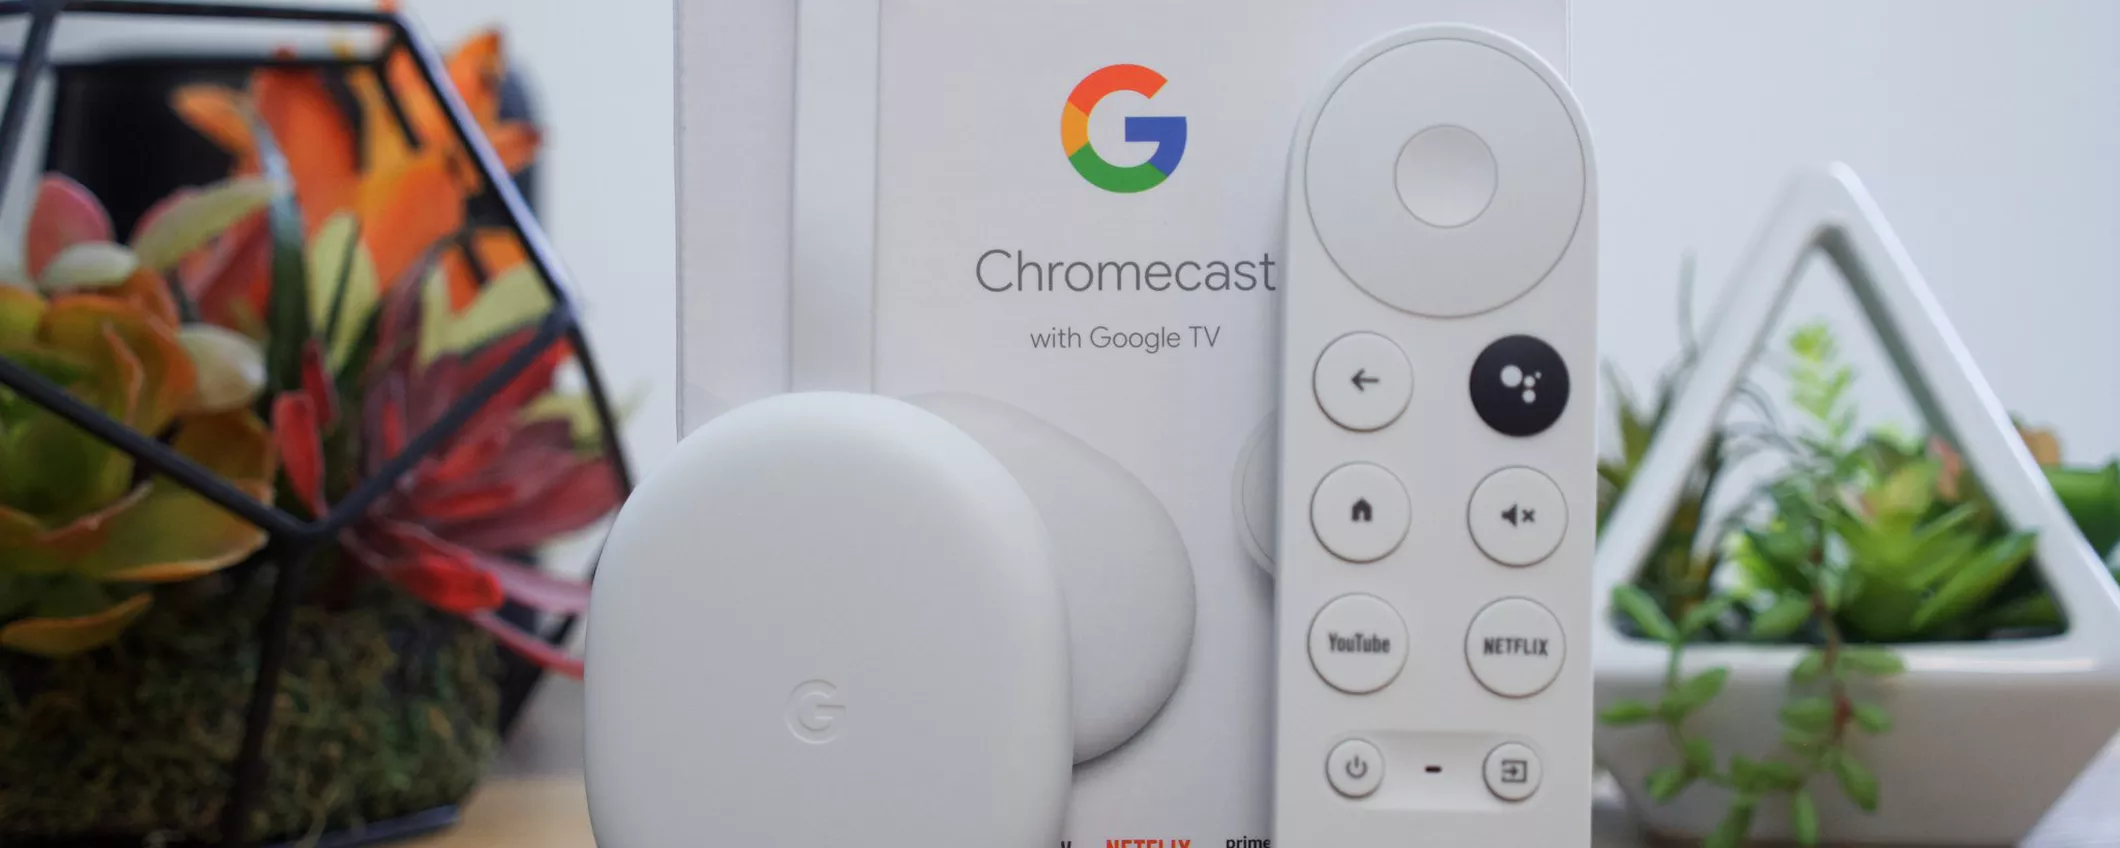 Chromecast con Google TV (HD) in offerta su Amazon: intrattenimento intelligente a soli 29€